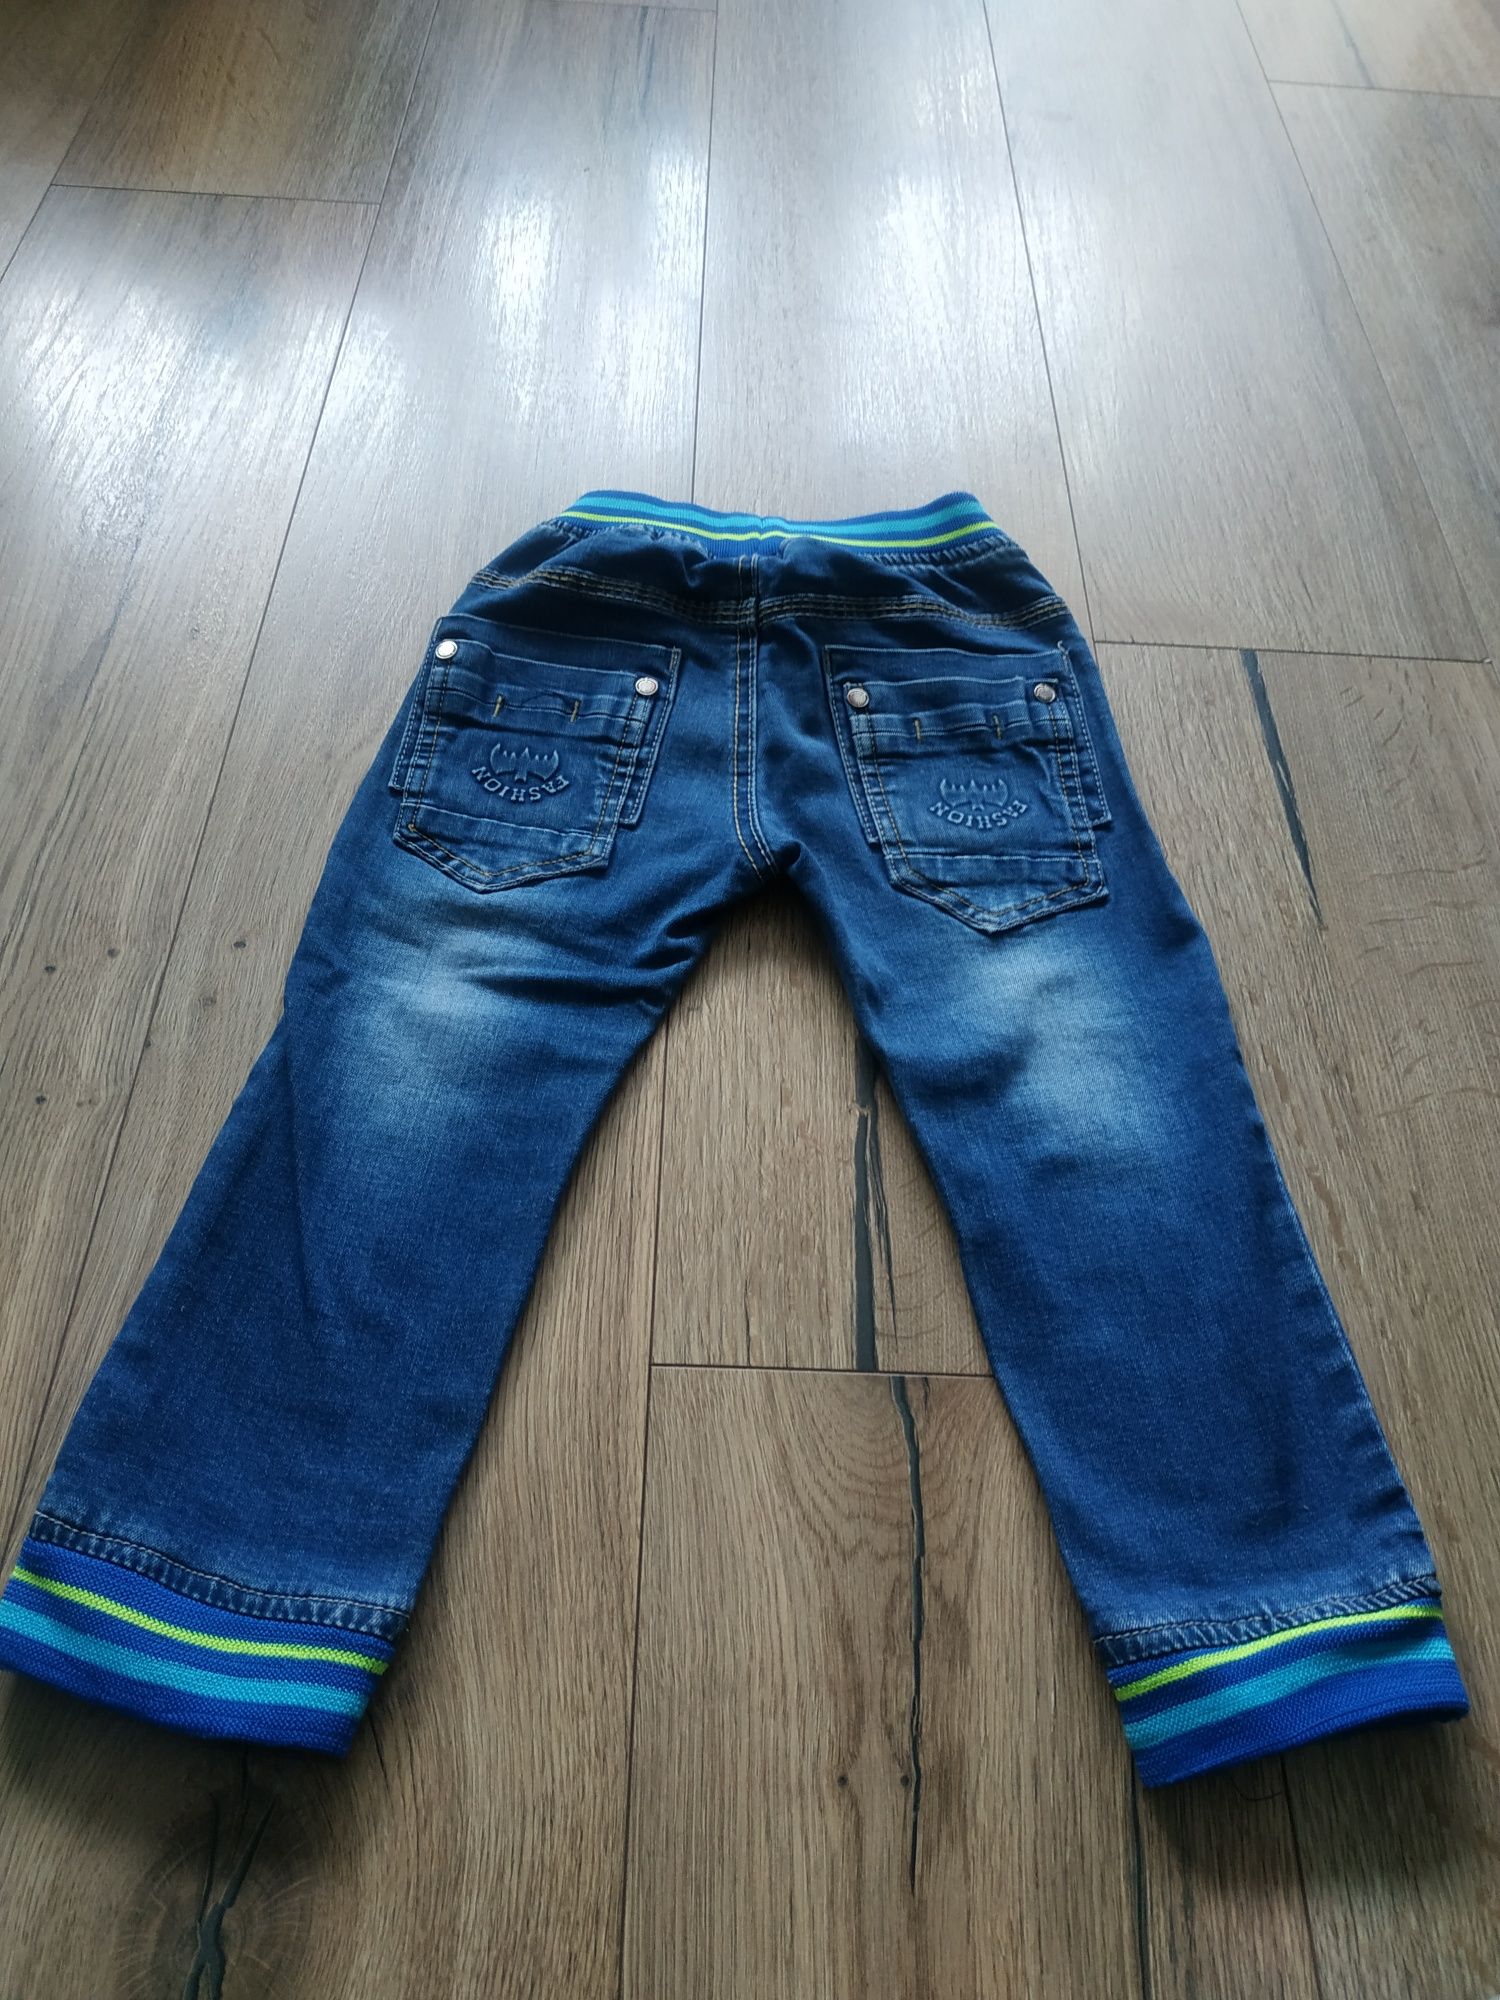 Spodnie chłopięce dżinsowe 86/92cm